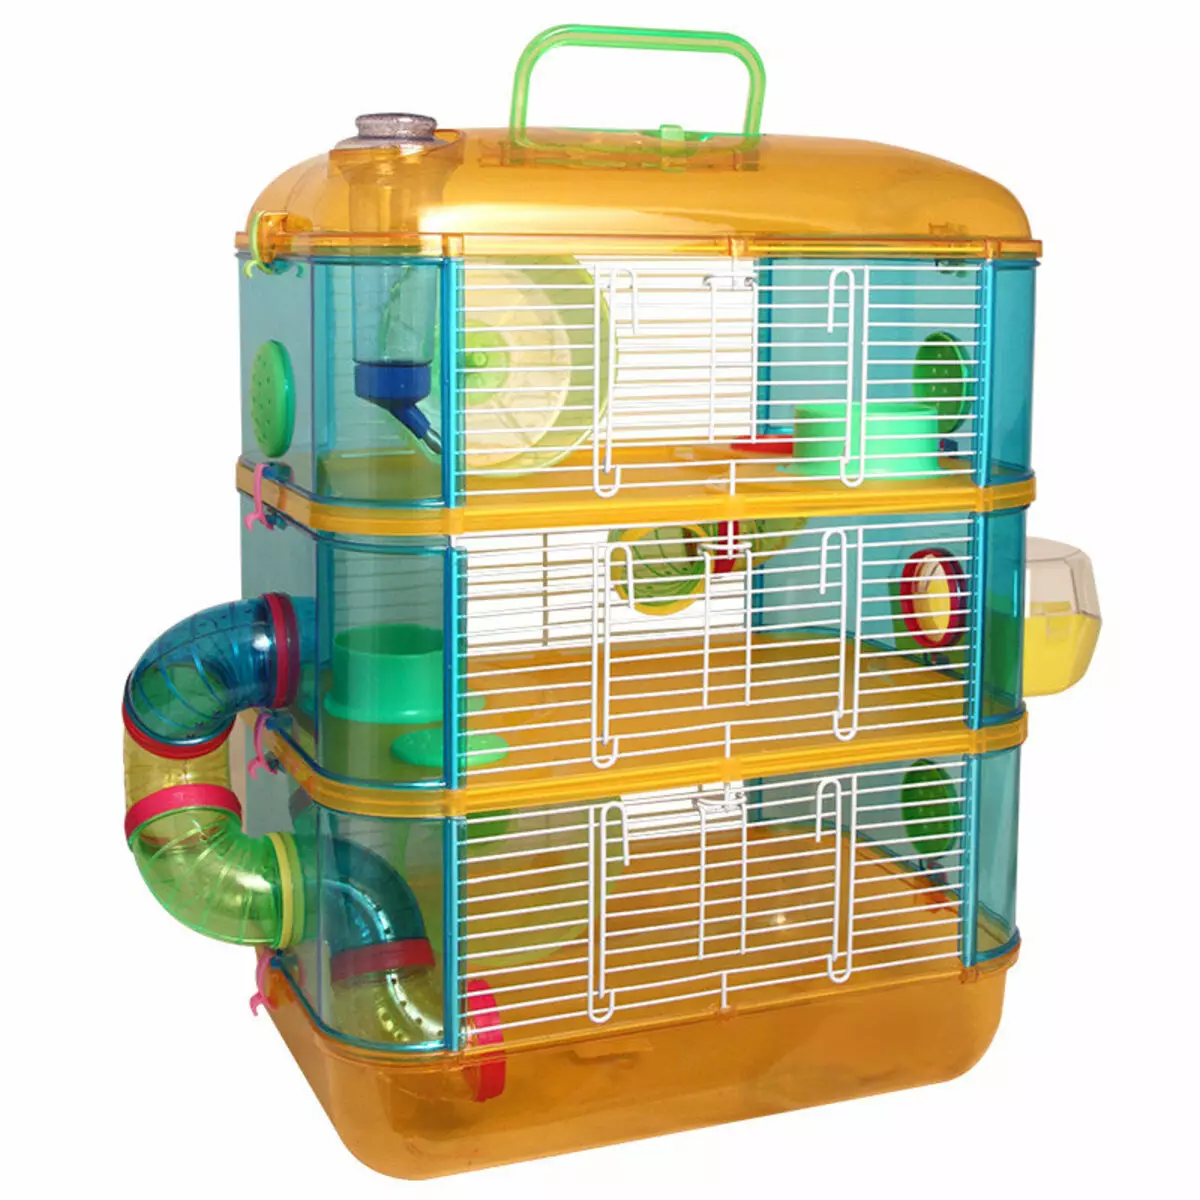 大鼠的籠子（35張）：應該是多少尺寸？什麼裝備大細胞？如何選擇兩個家庭大鼠的住宅？ 25120_4